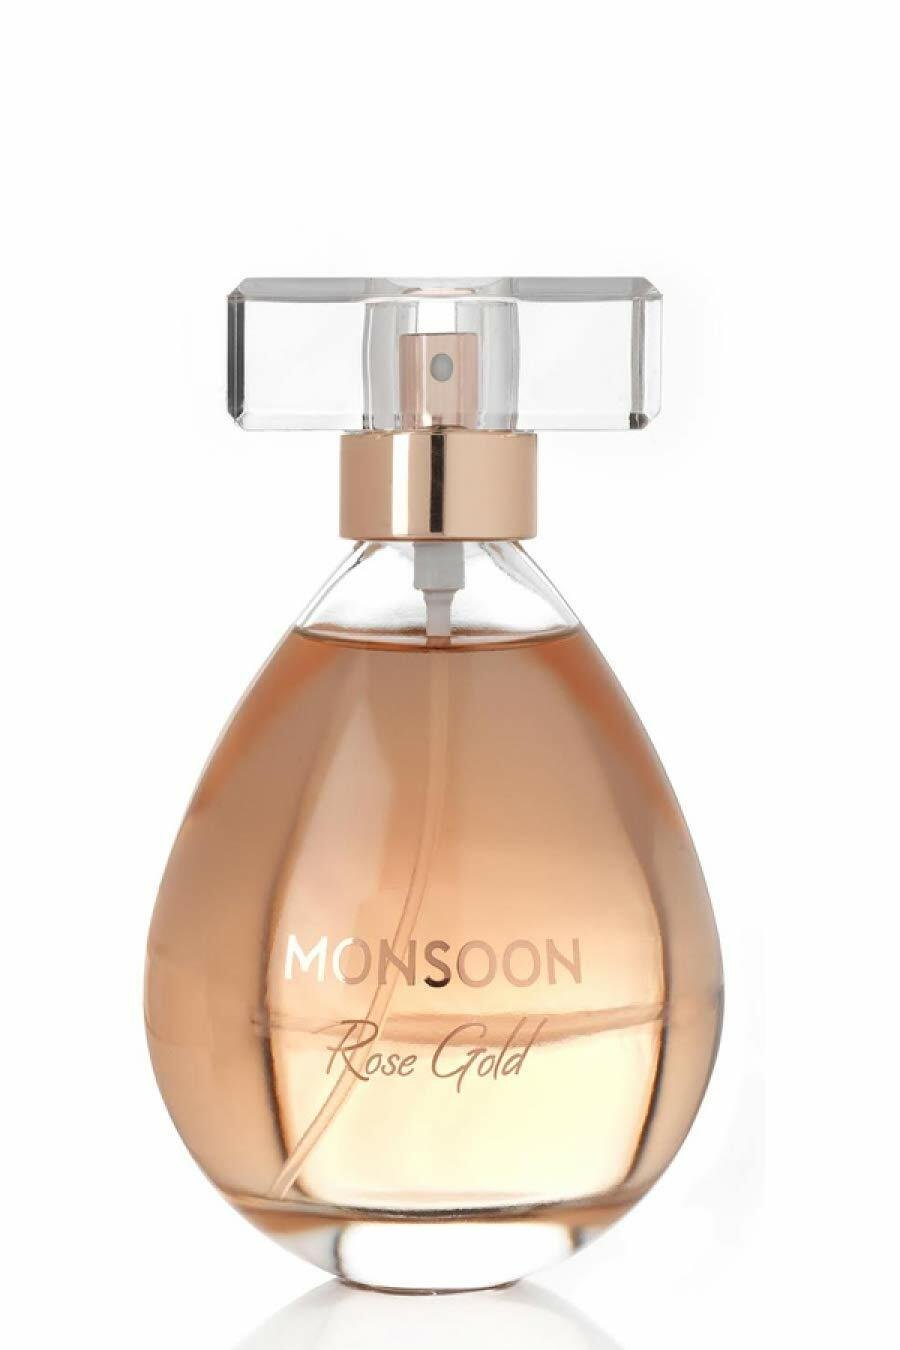 Monsoon Rose Gold Eau de Parfum - 50ml